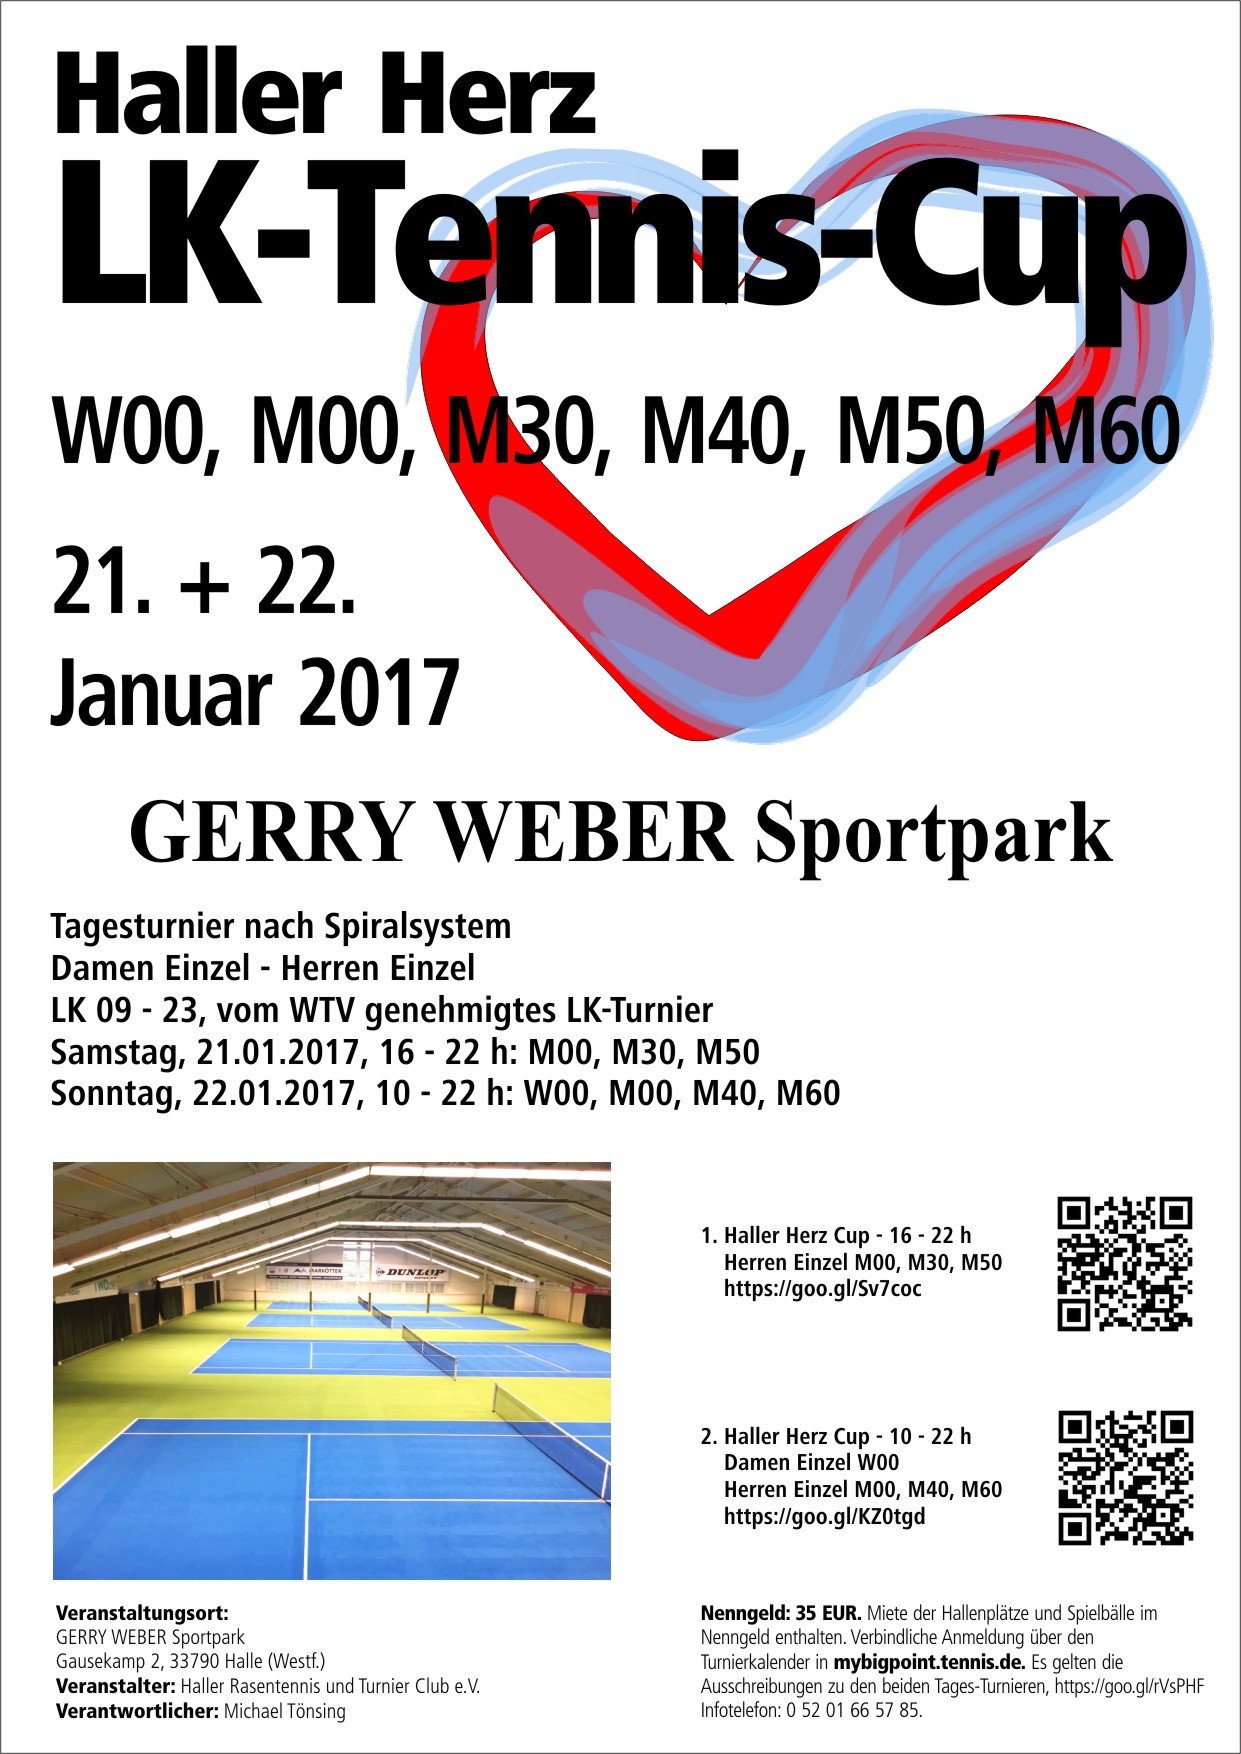 HALLER HERZ LK-TENNIS-CUP im GERRY WEBER Sportpark. Verantwortlicher Ausrichter Michael Tönsing